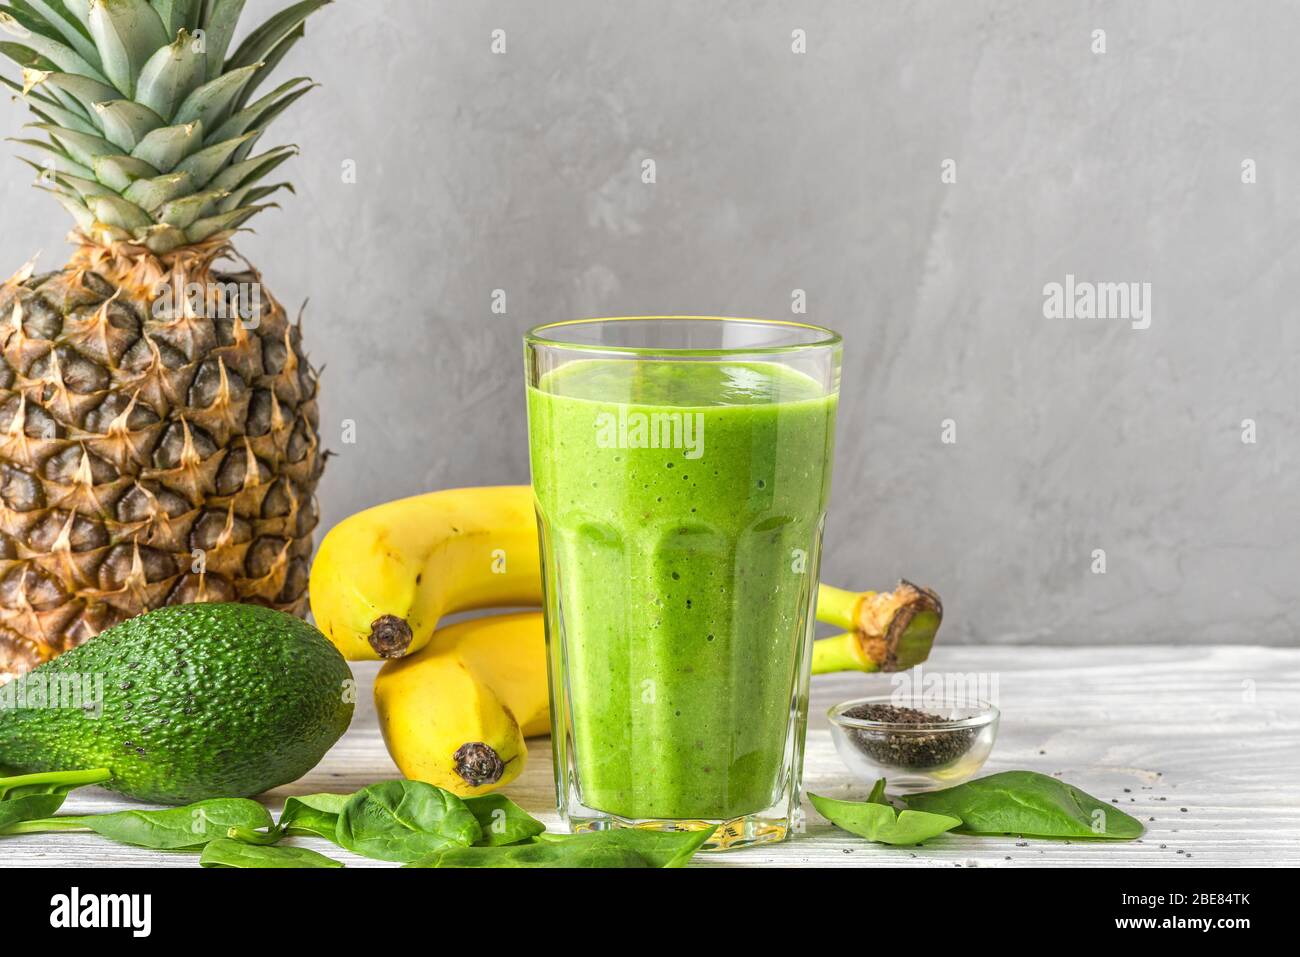 Glas mit grünem, gesunder Smoothie Detox aus Spinat, Ananas, Avocado,  Banane und Chia-Samen. Roh, vegan, vegetarisch, Kochkost Konzept  Stockfotografie - Alamy